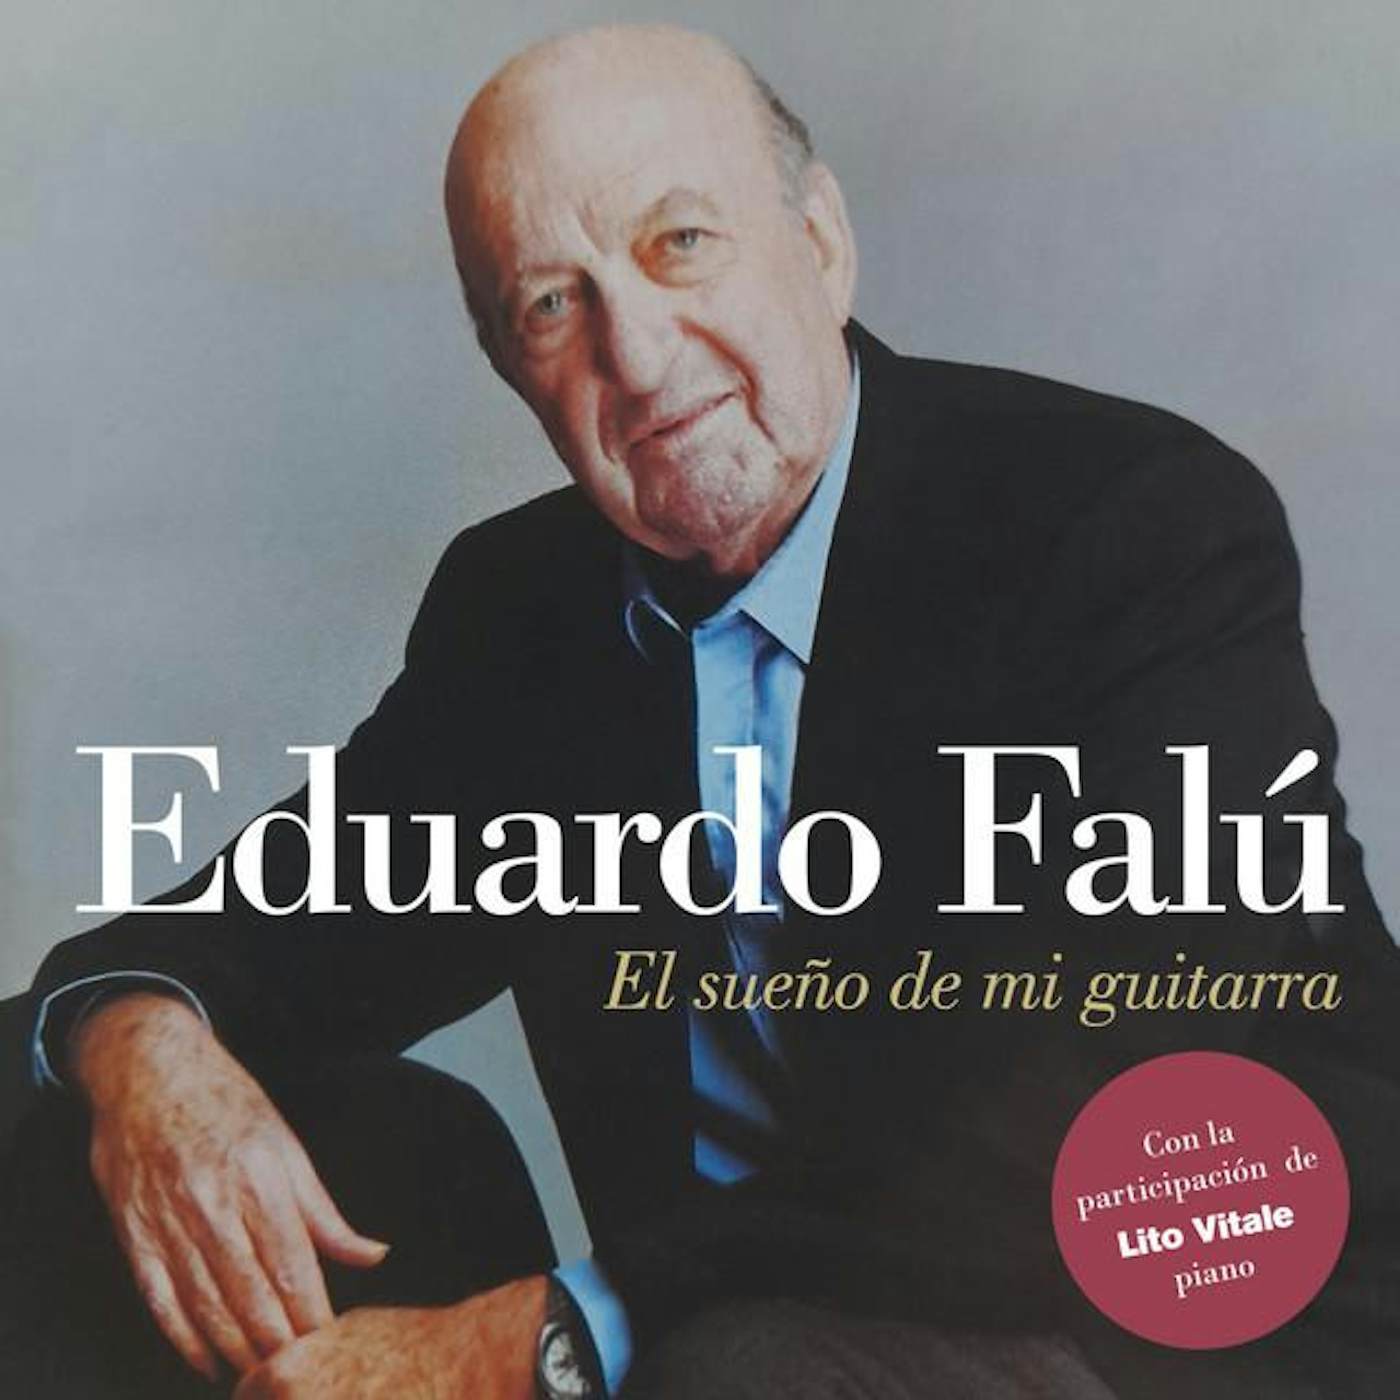 Eduardo Falú